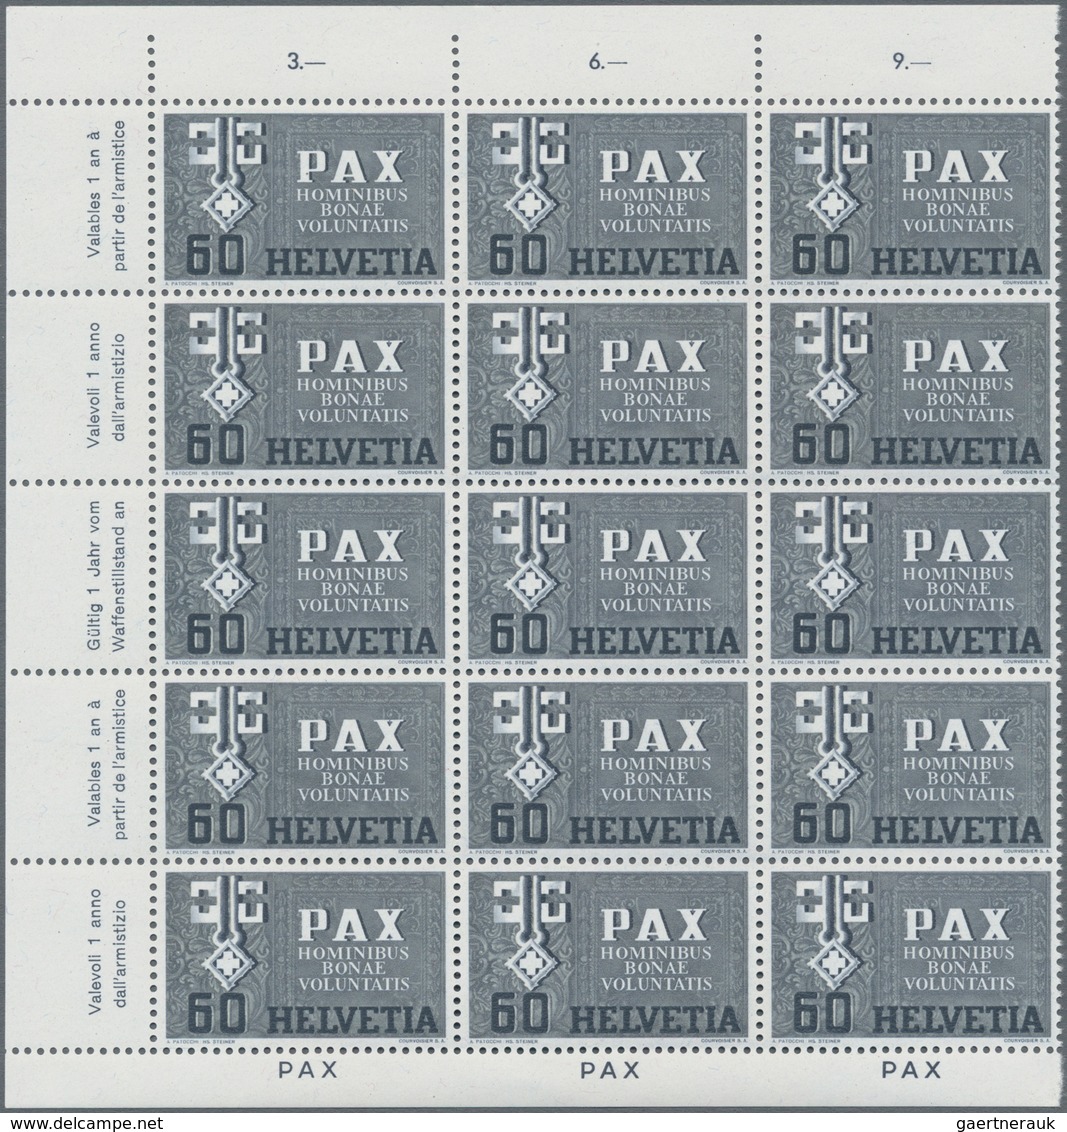 Schweiz: 1945, PAX 50 Rp.-10 Fr., acht Werte je in Rand-15er-Blocks postfrisch (ein Wert 10 Fr. etwa